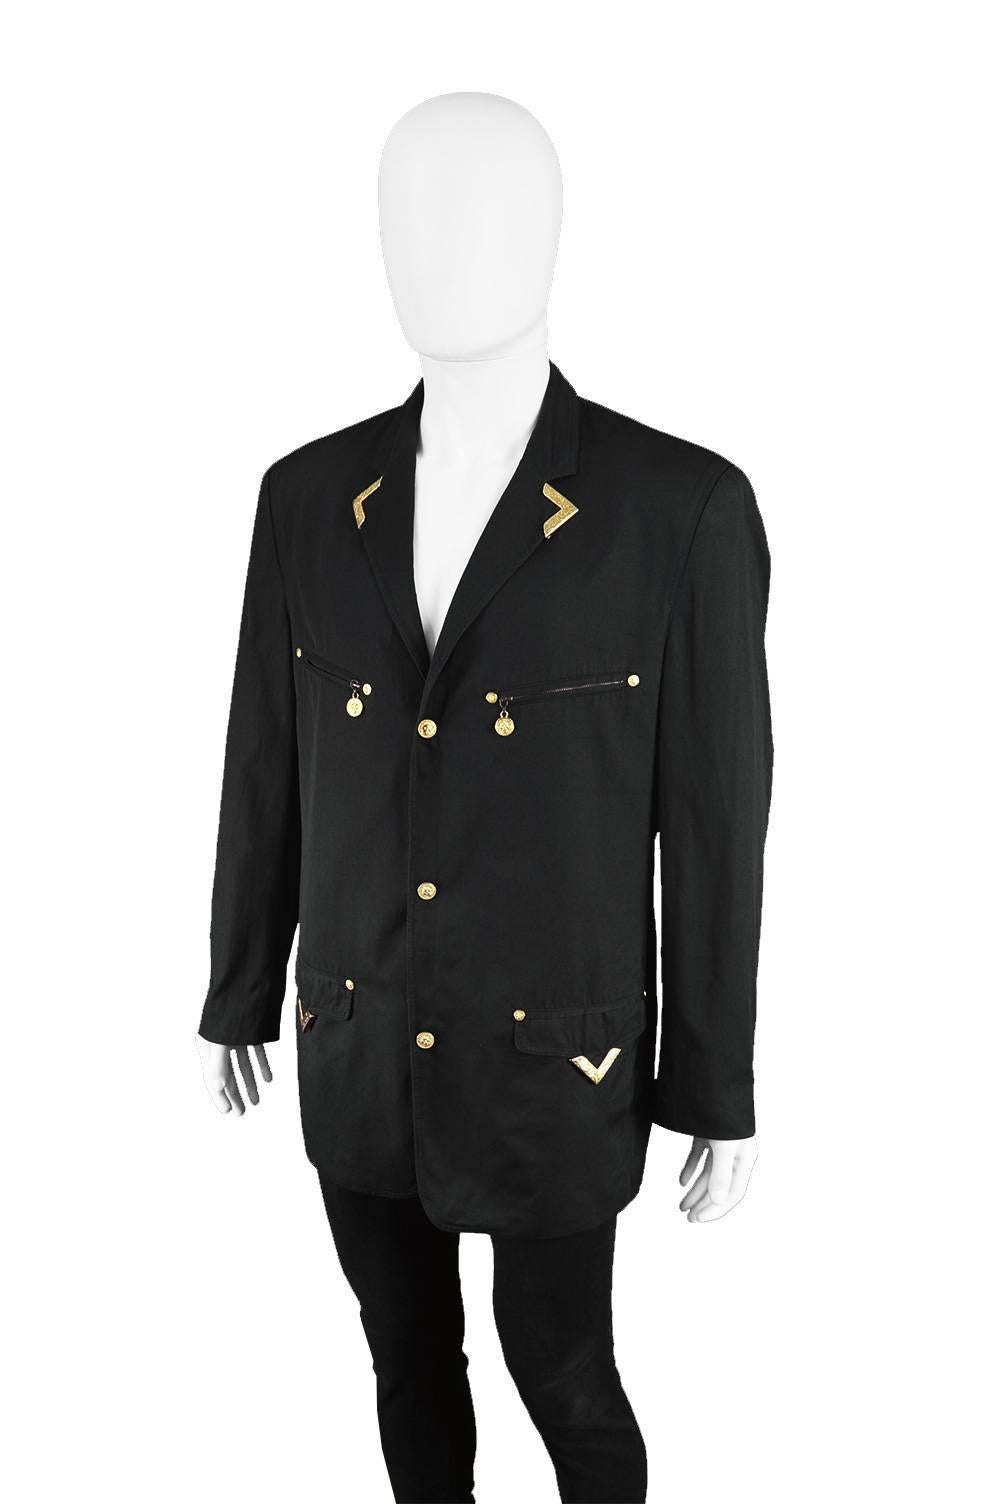 Gianni Versace Versus Vintage 1990's Men's Rare S & M Black & Gold Cotton Blazer For Sale 4